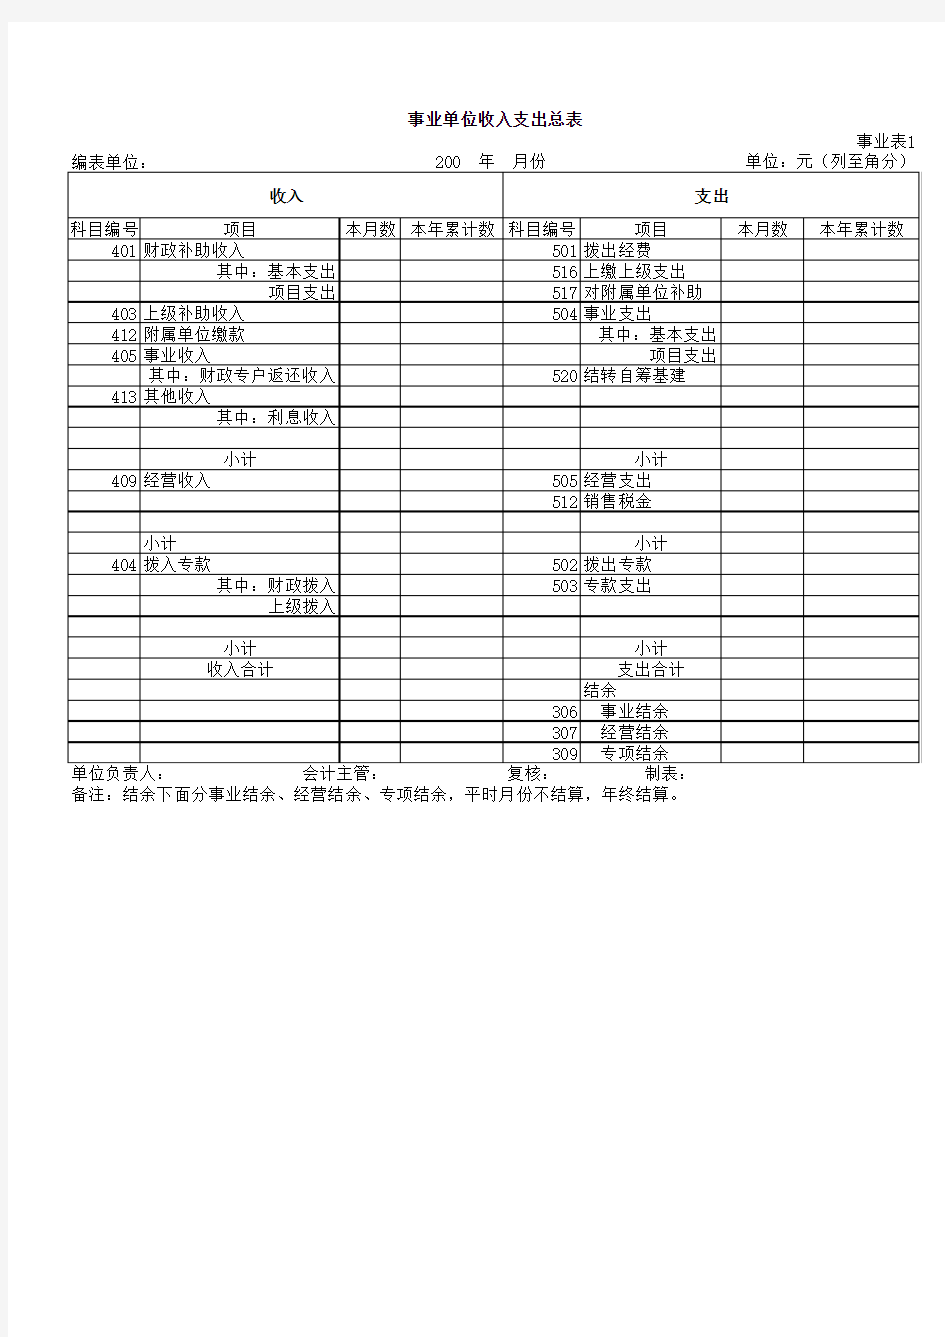 行政事业单位会计报表(表格模板、XLS格式)